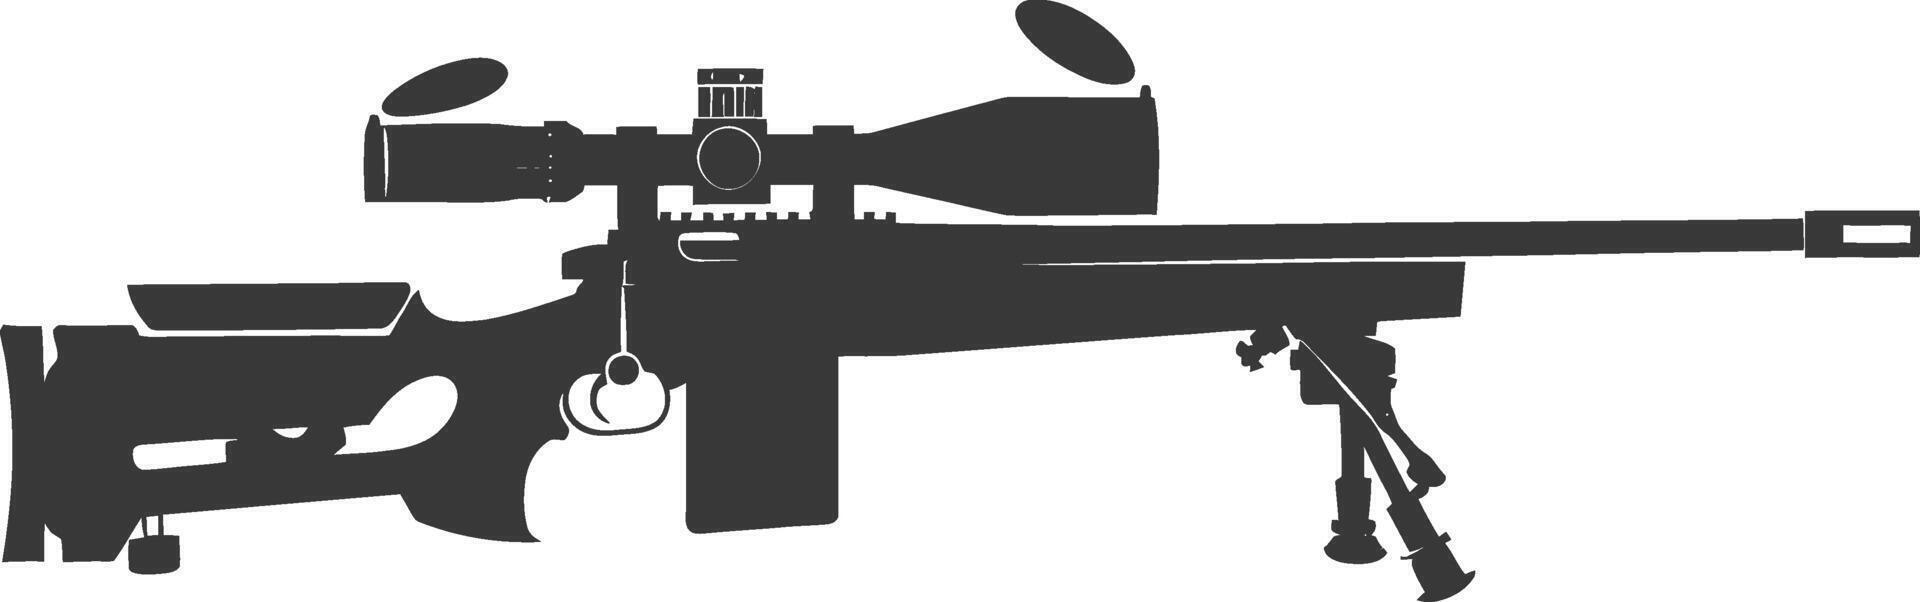 silhouette cecchino fucile pistola militare arma nero colore solo vettore